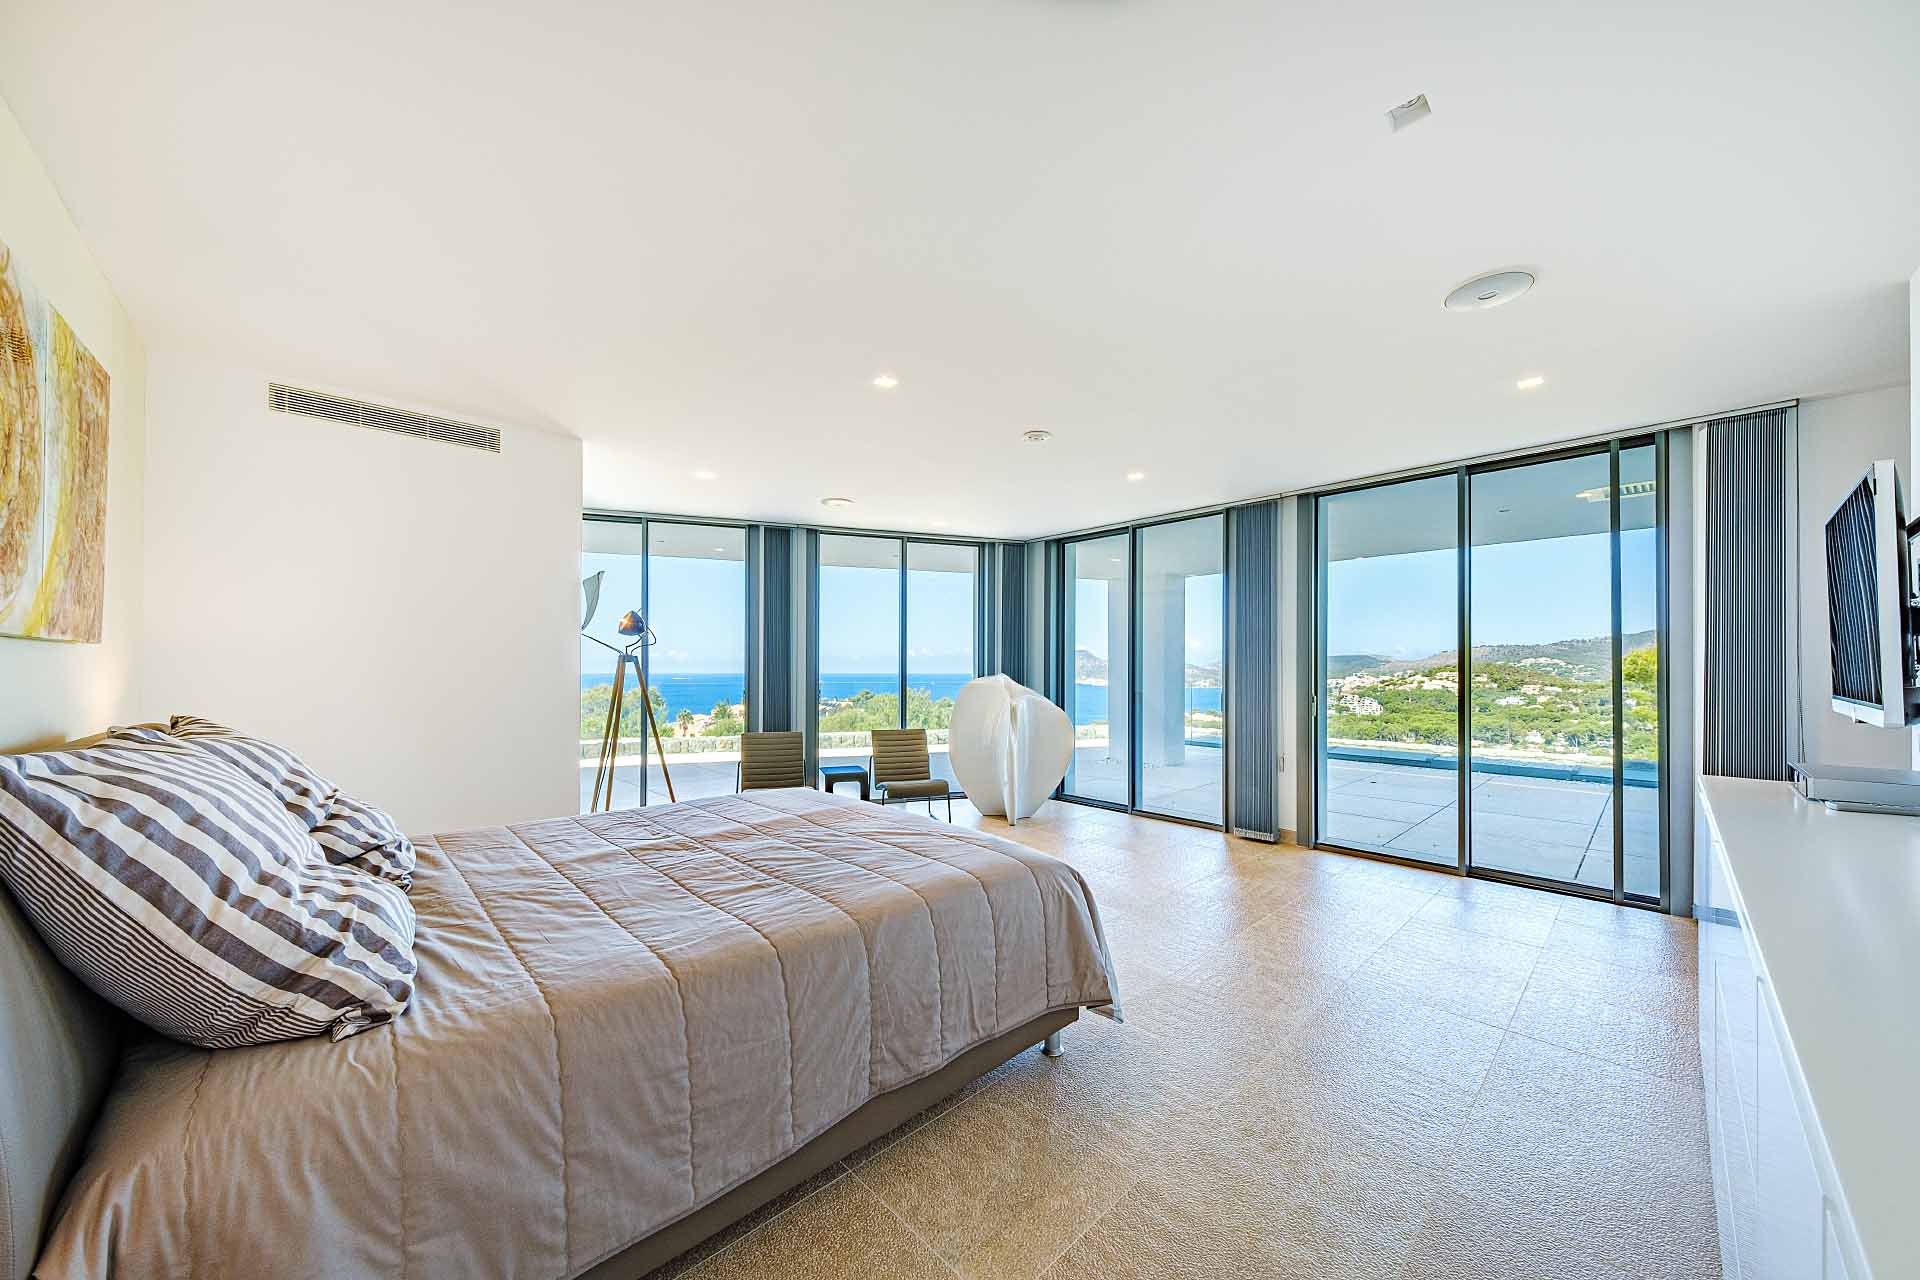 Excepcional Villa con fantásticas vistas al mar - Dormitorio con vistas al mar